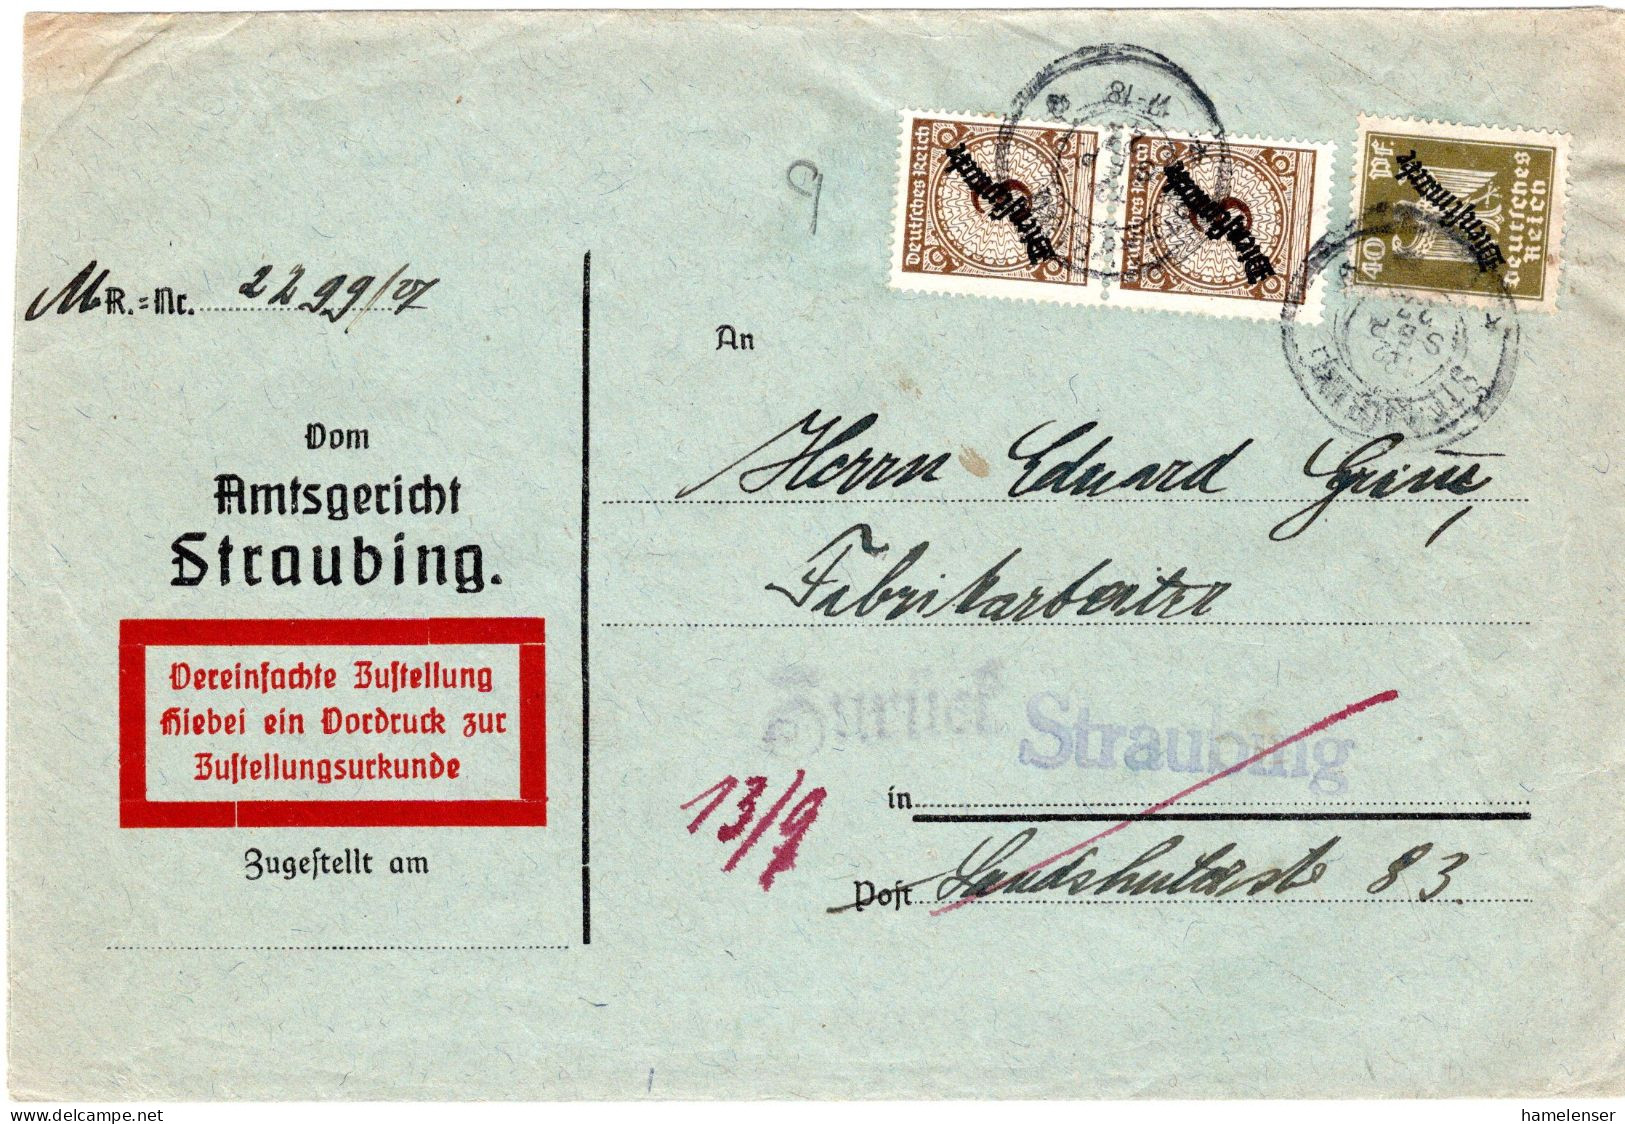 64445 - Deutsches Reich / Dienst - 1927 - 40Pfg Adler MiF A OrtsZUBf STRAUBING, Zurueck Als "Empfaenger .. Ausgewandert" - Service